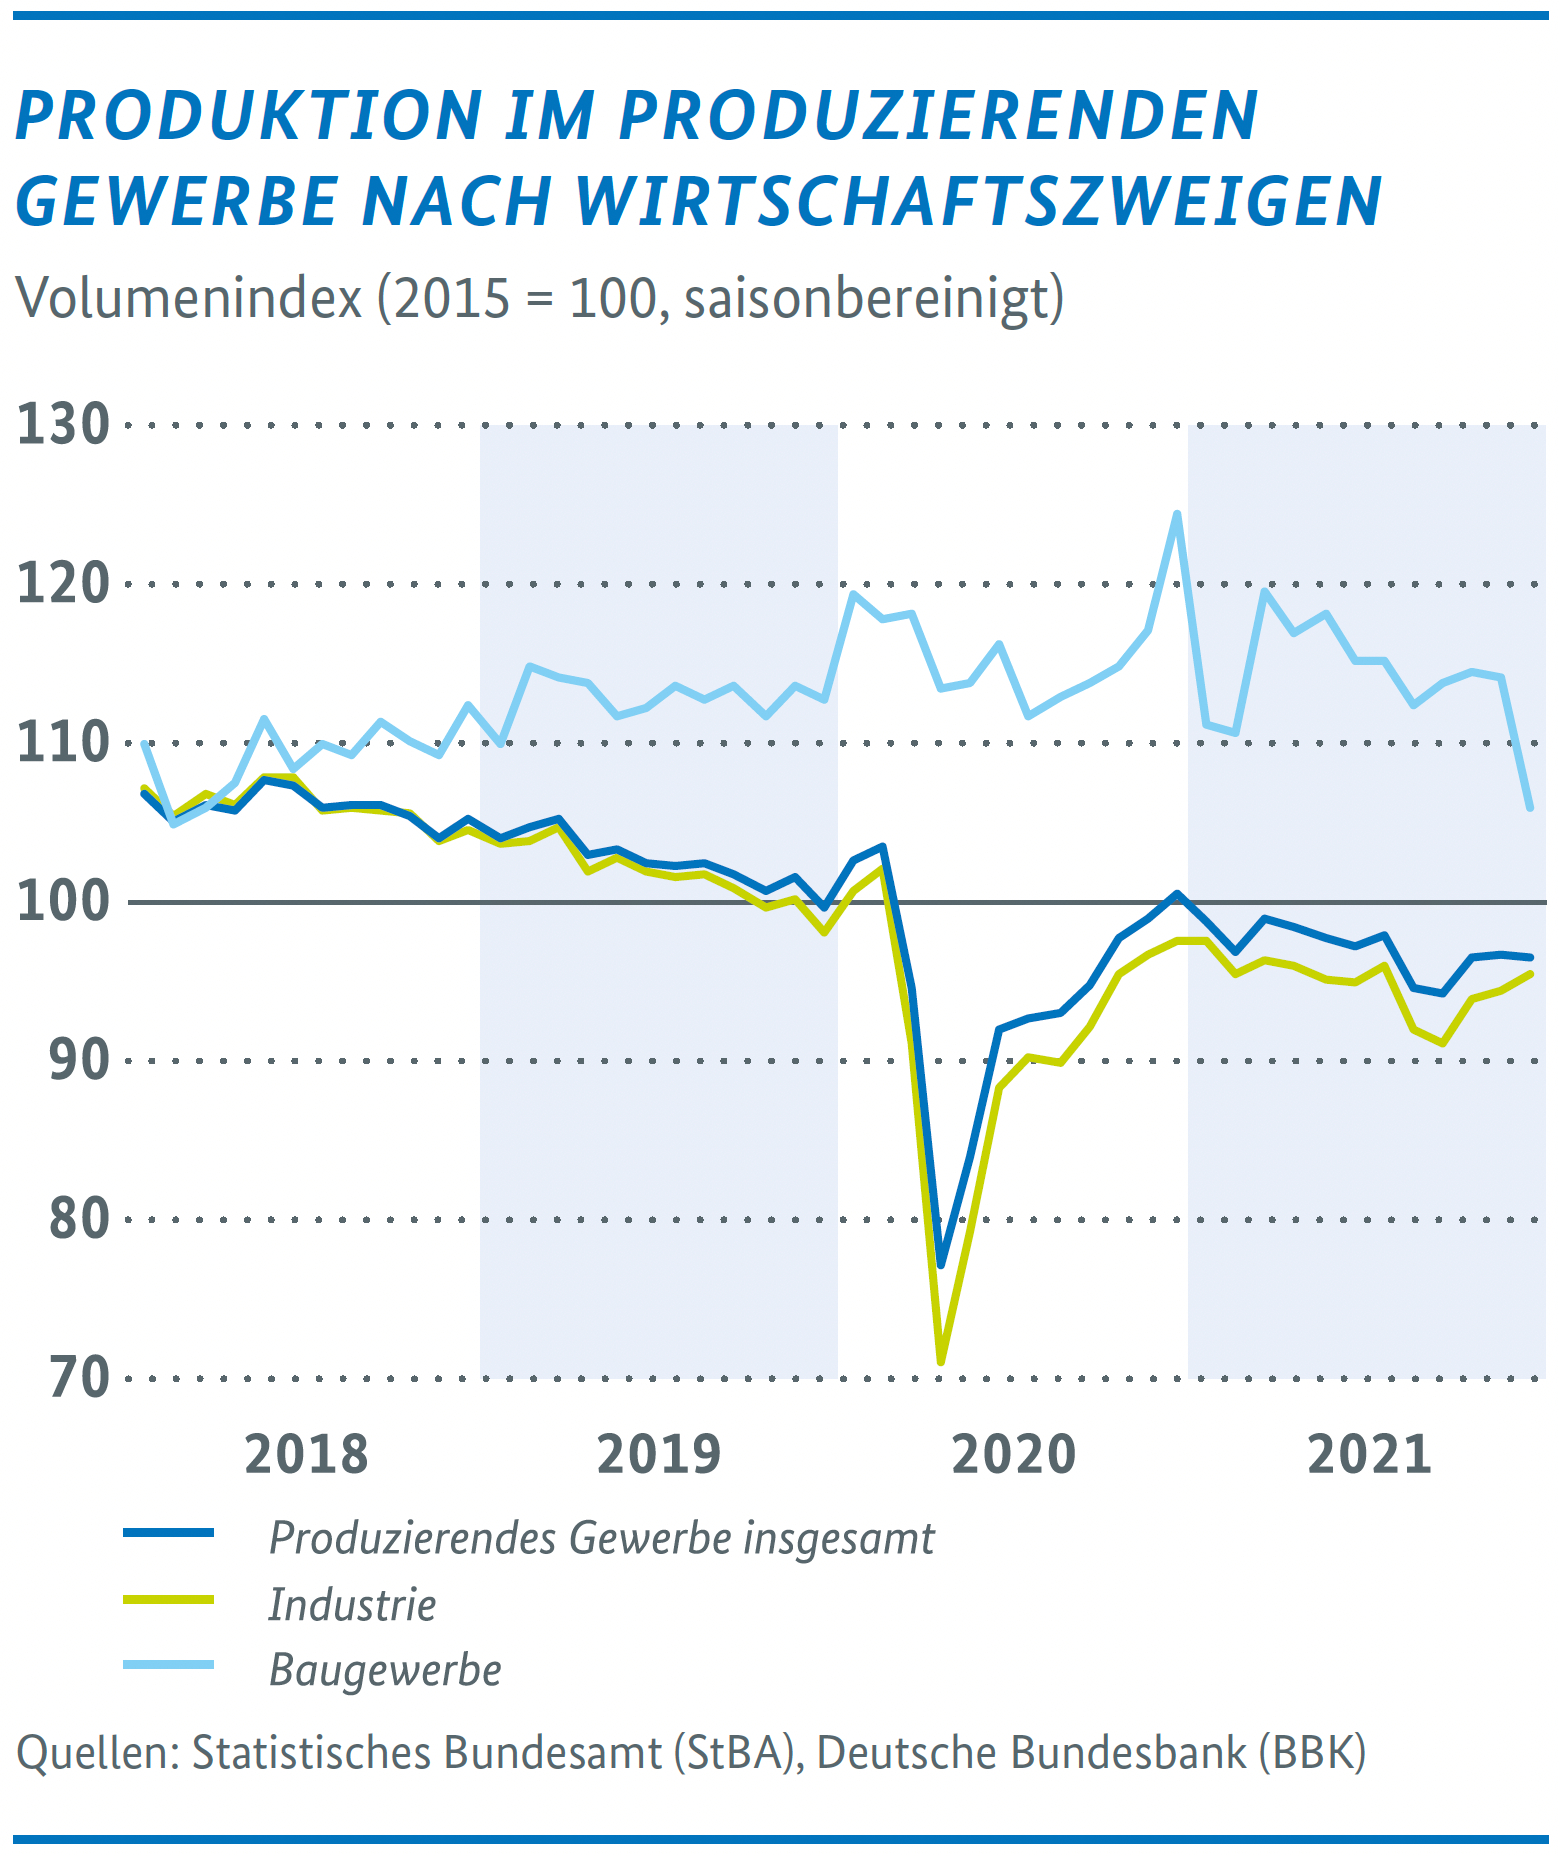 Wirtschaftliche Lage in Deutschland – Produktion im produzierenden Gewerbe nach Wirtschaftszweigen